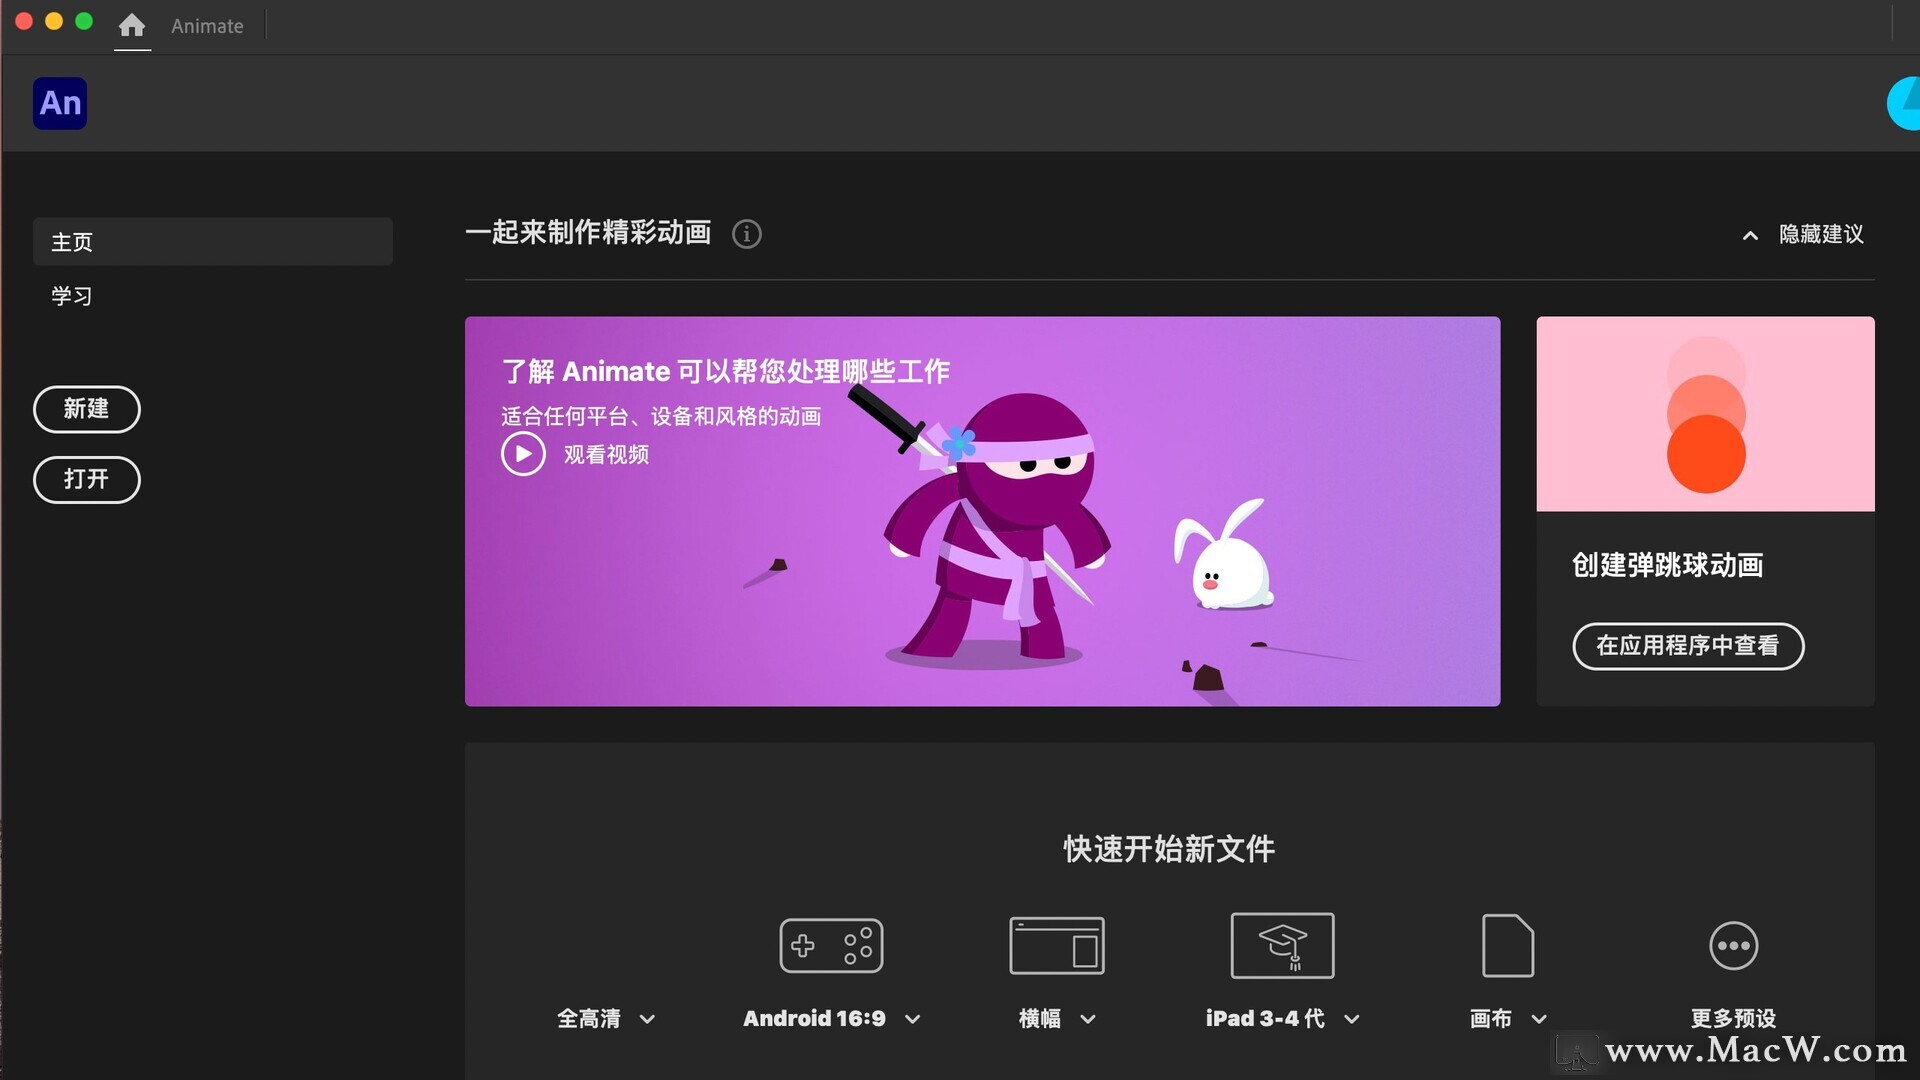 mac/win Animate 2021新功能 (An 2021中文直装版安装)